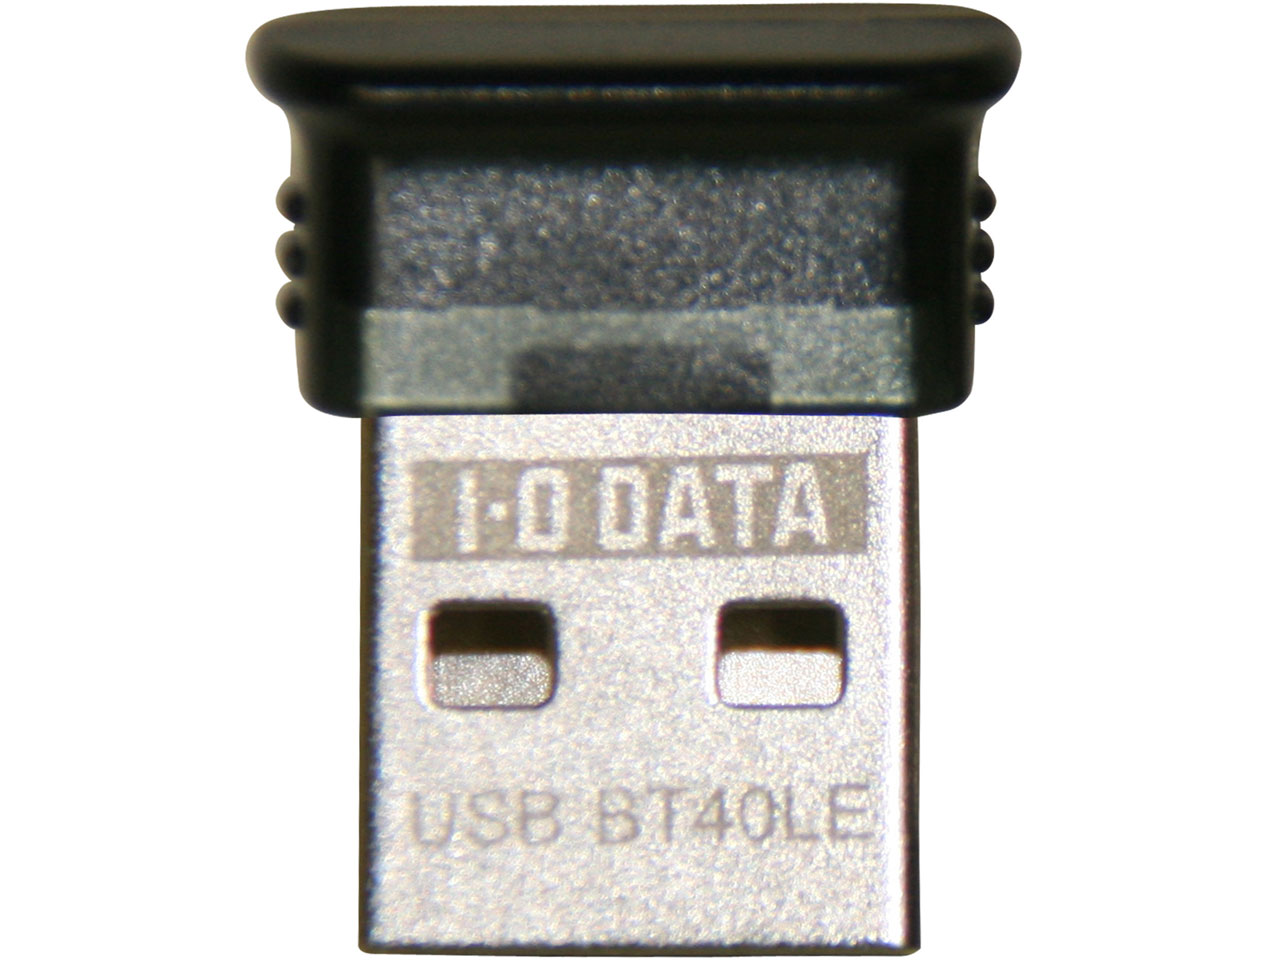 USB-BT40LE